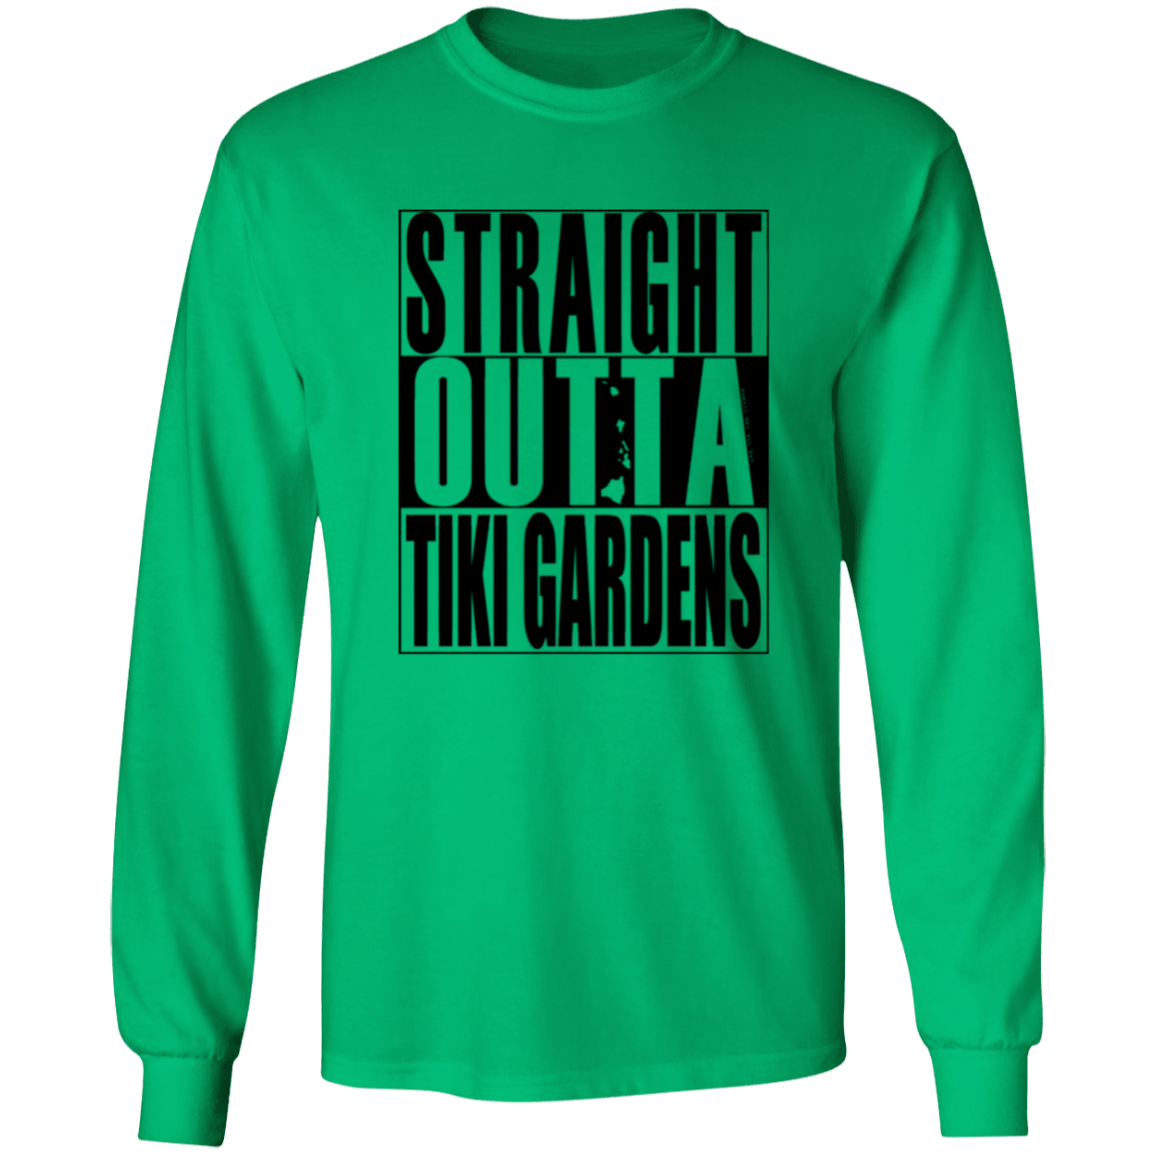 Straight Outta Tiki Gardens(black ink) LS T-Shirt